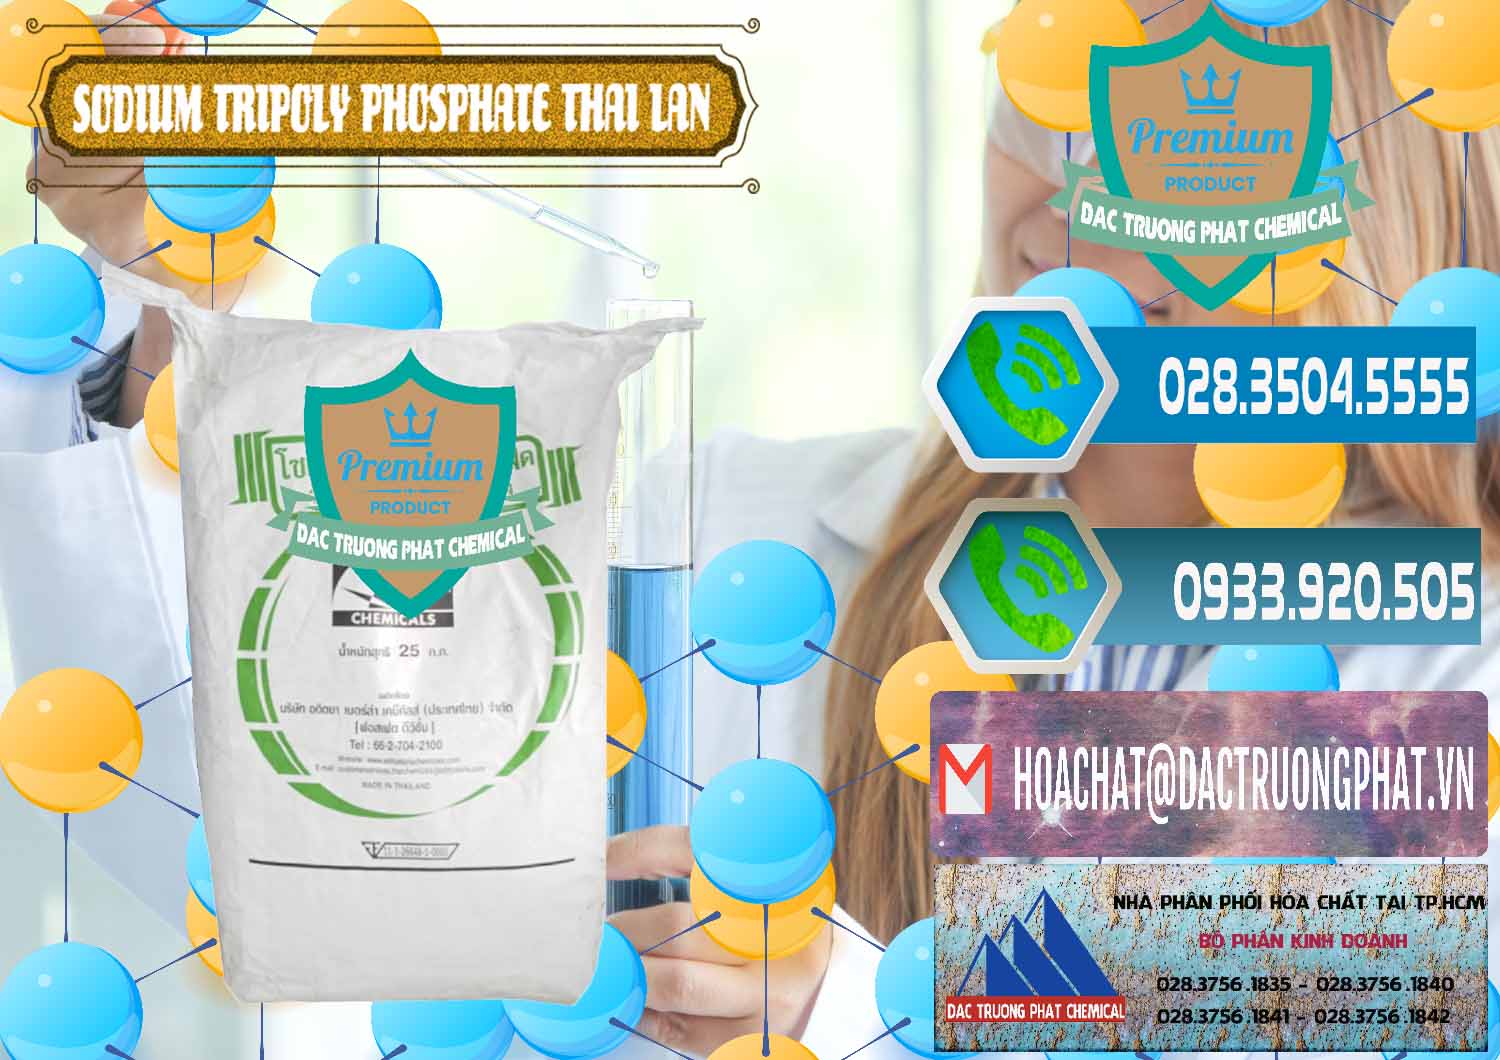 Cty nhập khẩu ( bán ) Sodium Tripoly Phosphate - STPP Aditya Birla Grasim Thái Lan Thailand - 0421 - Đơn vị cung cấp ( kinh doanh ) hóa chất tại TP.HCM - congtyhoachat.net